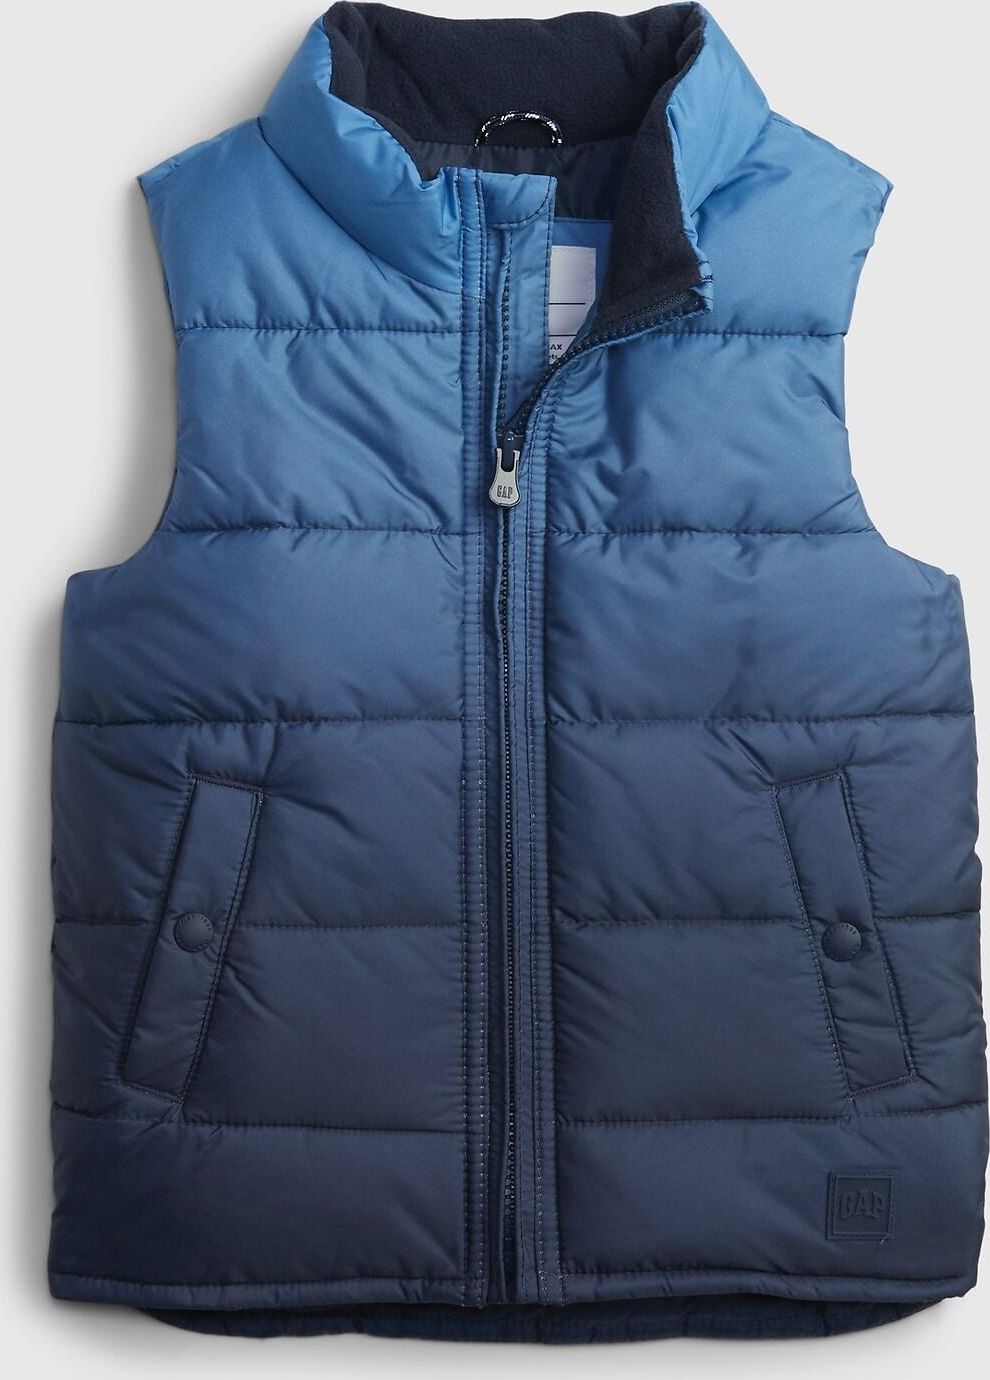 Modrá klučičí bunda warmest vest - 80-86 - obrázek 1